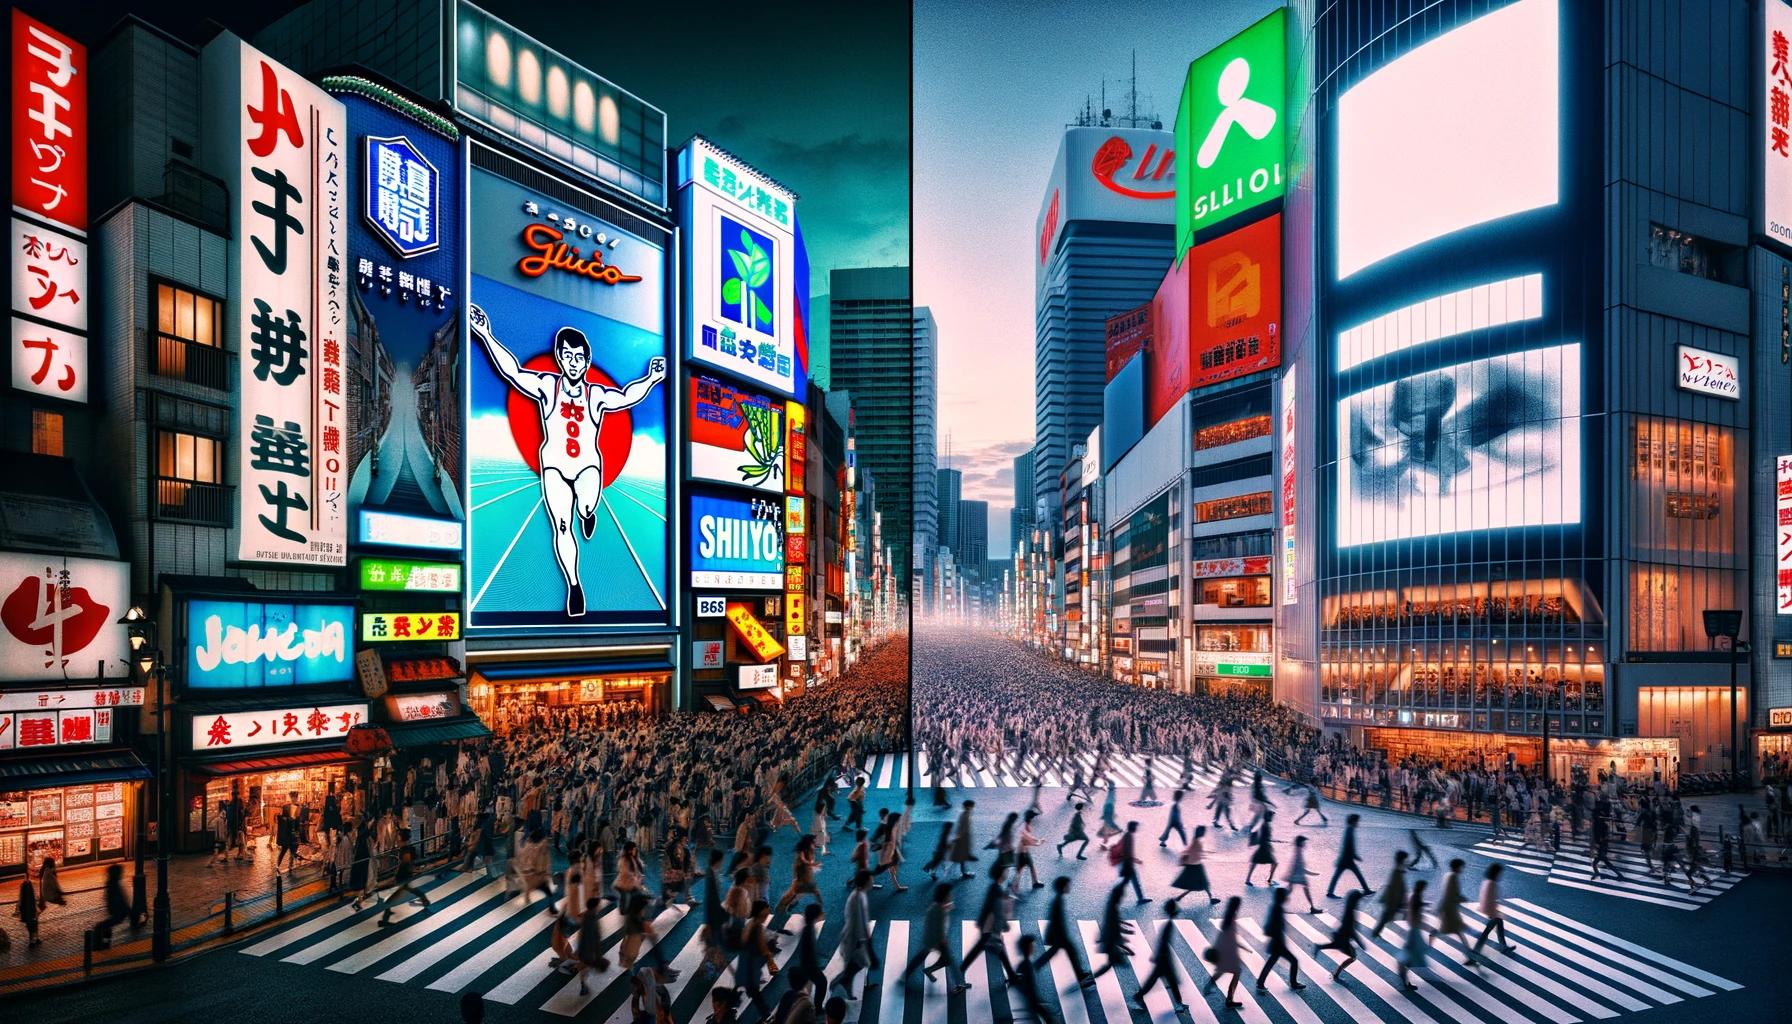 오사카 vs 도쿄: 여행 계획 시 고려해야 할 주요 차이점 및 여행 팁 총정리